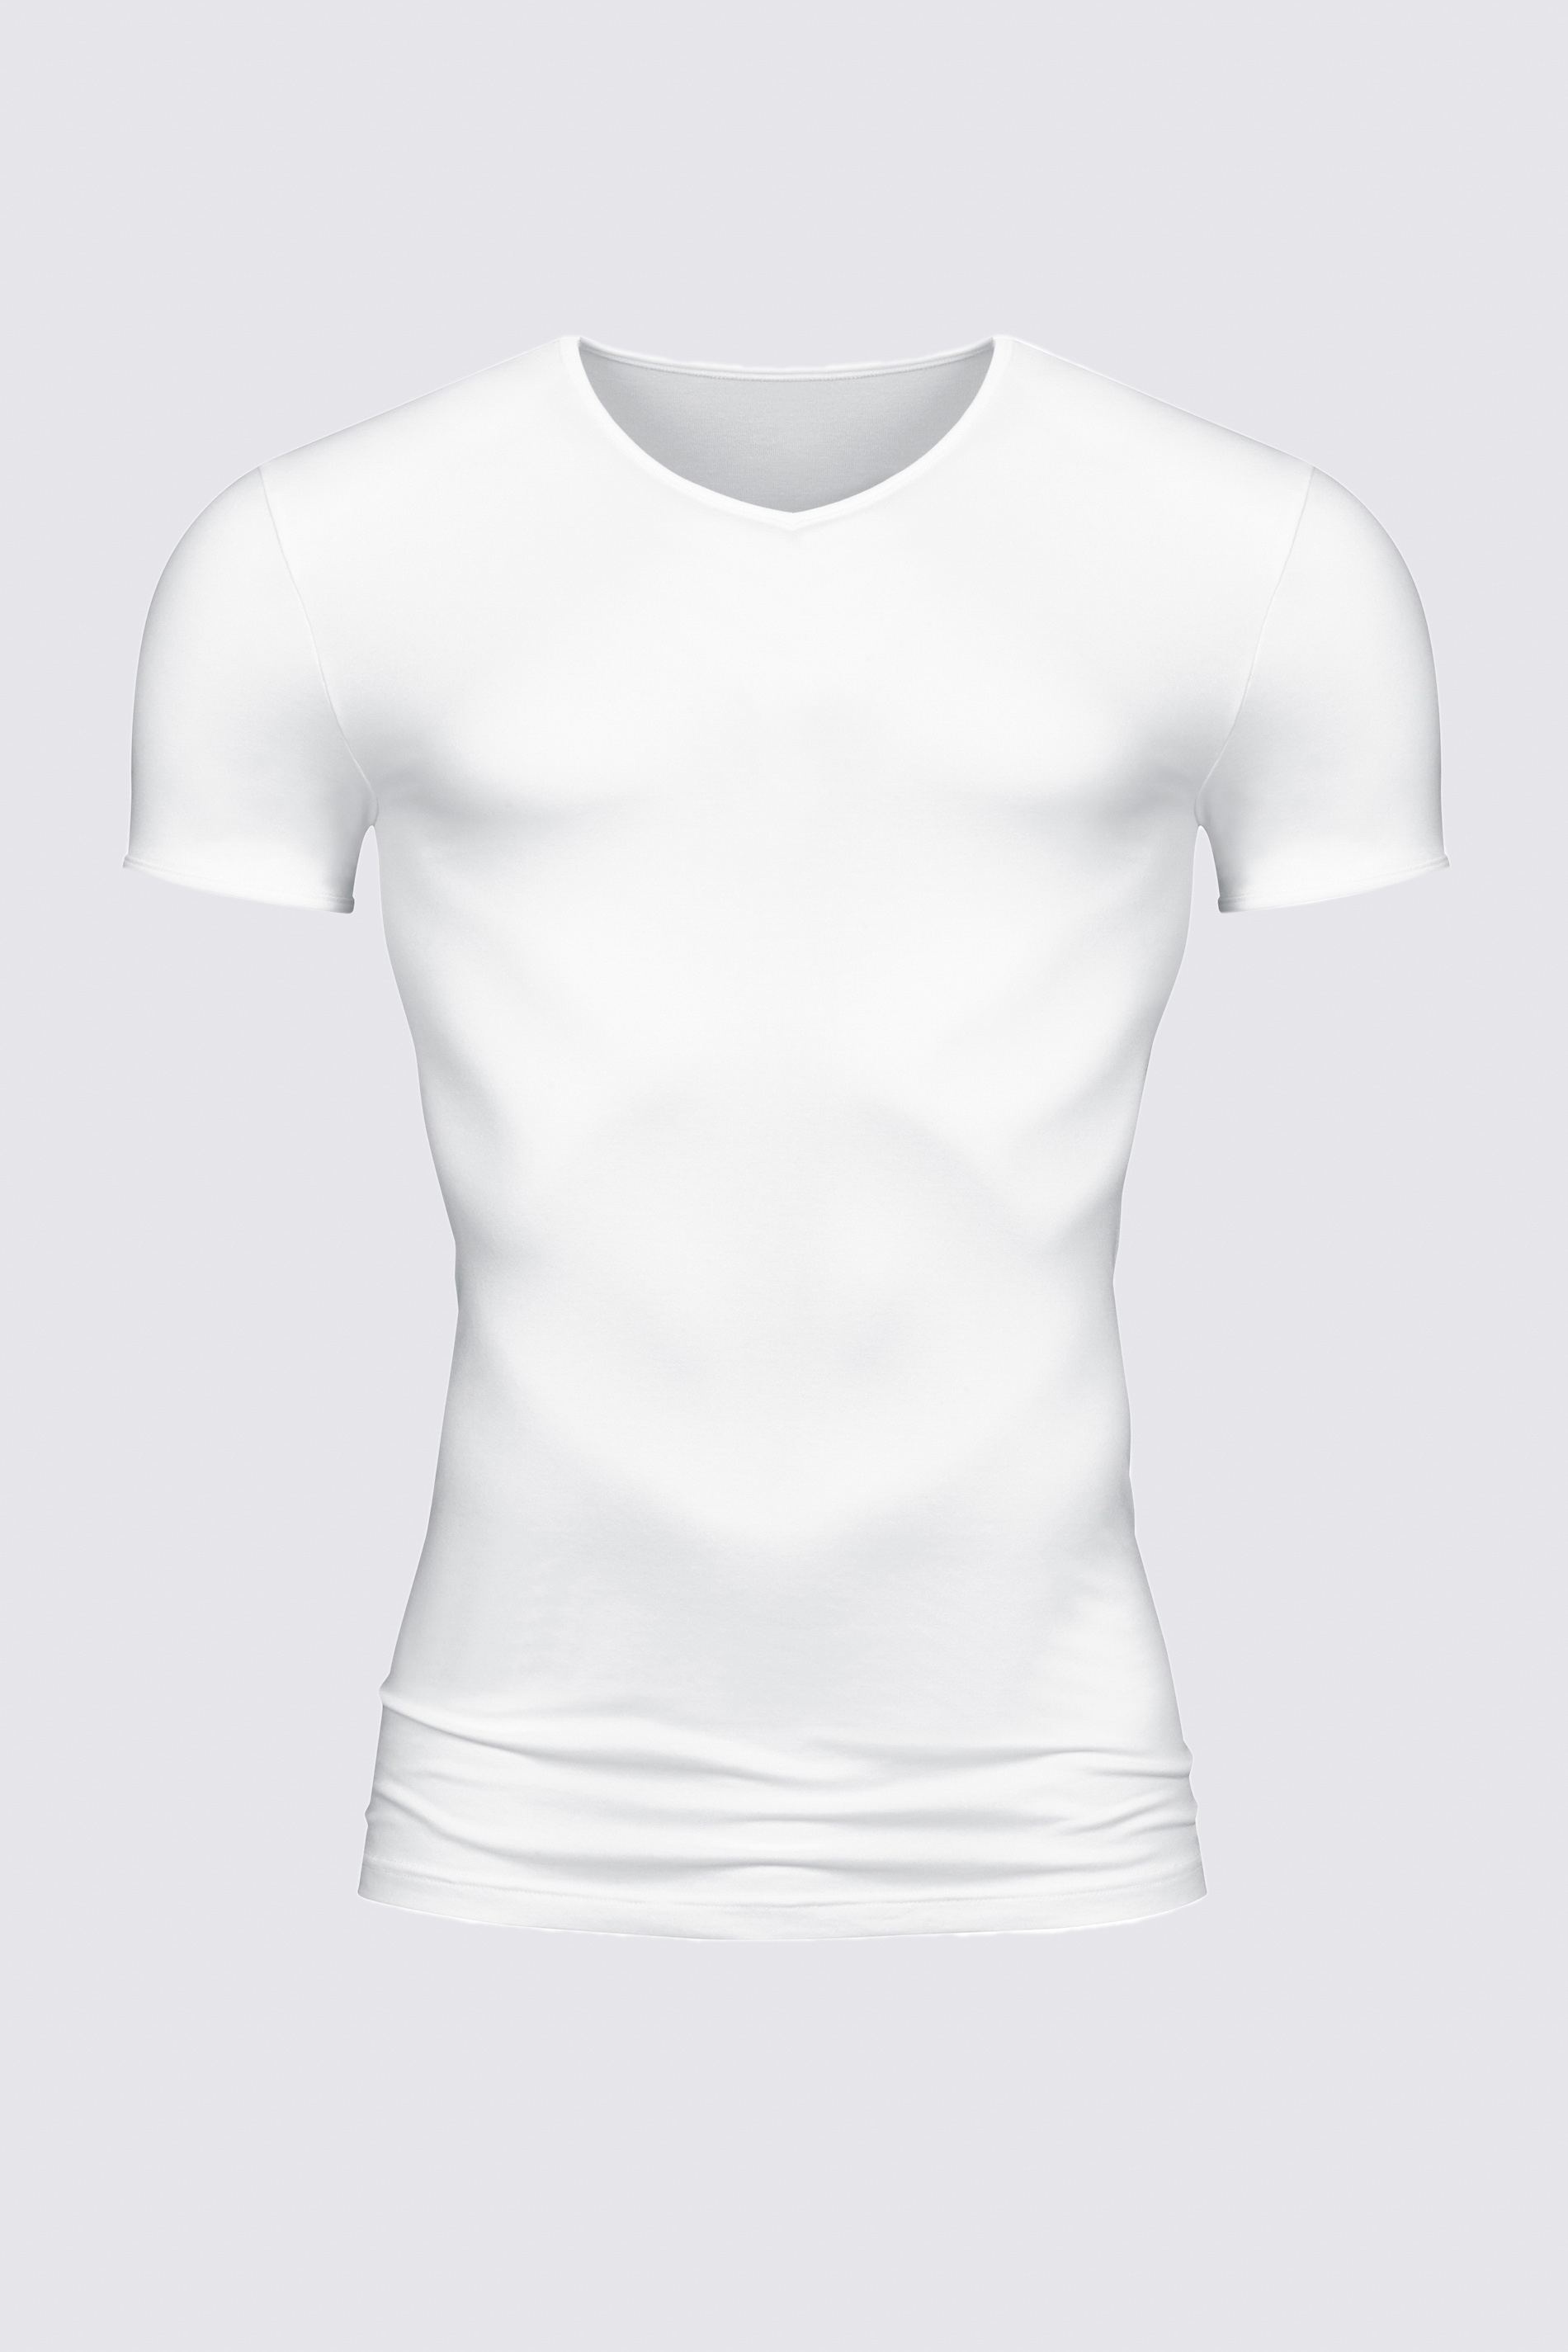 Shirt Weiss Serie Software Freisteller | mey®